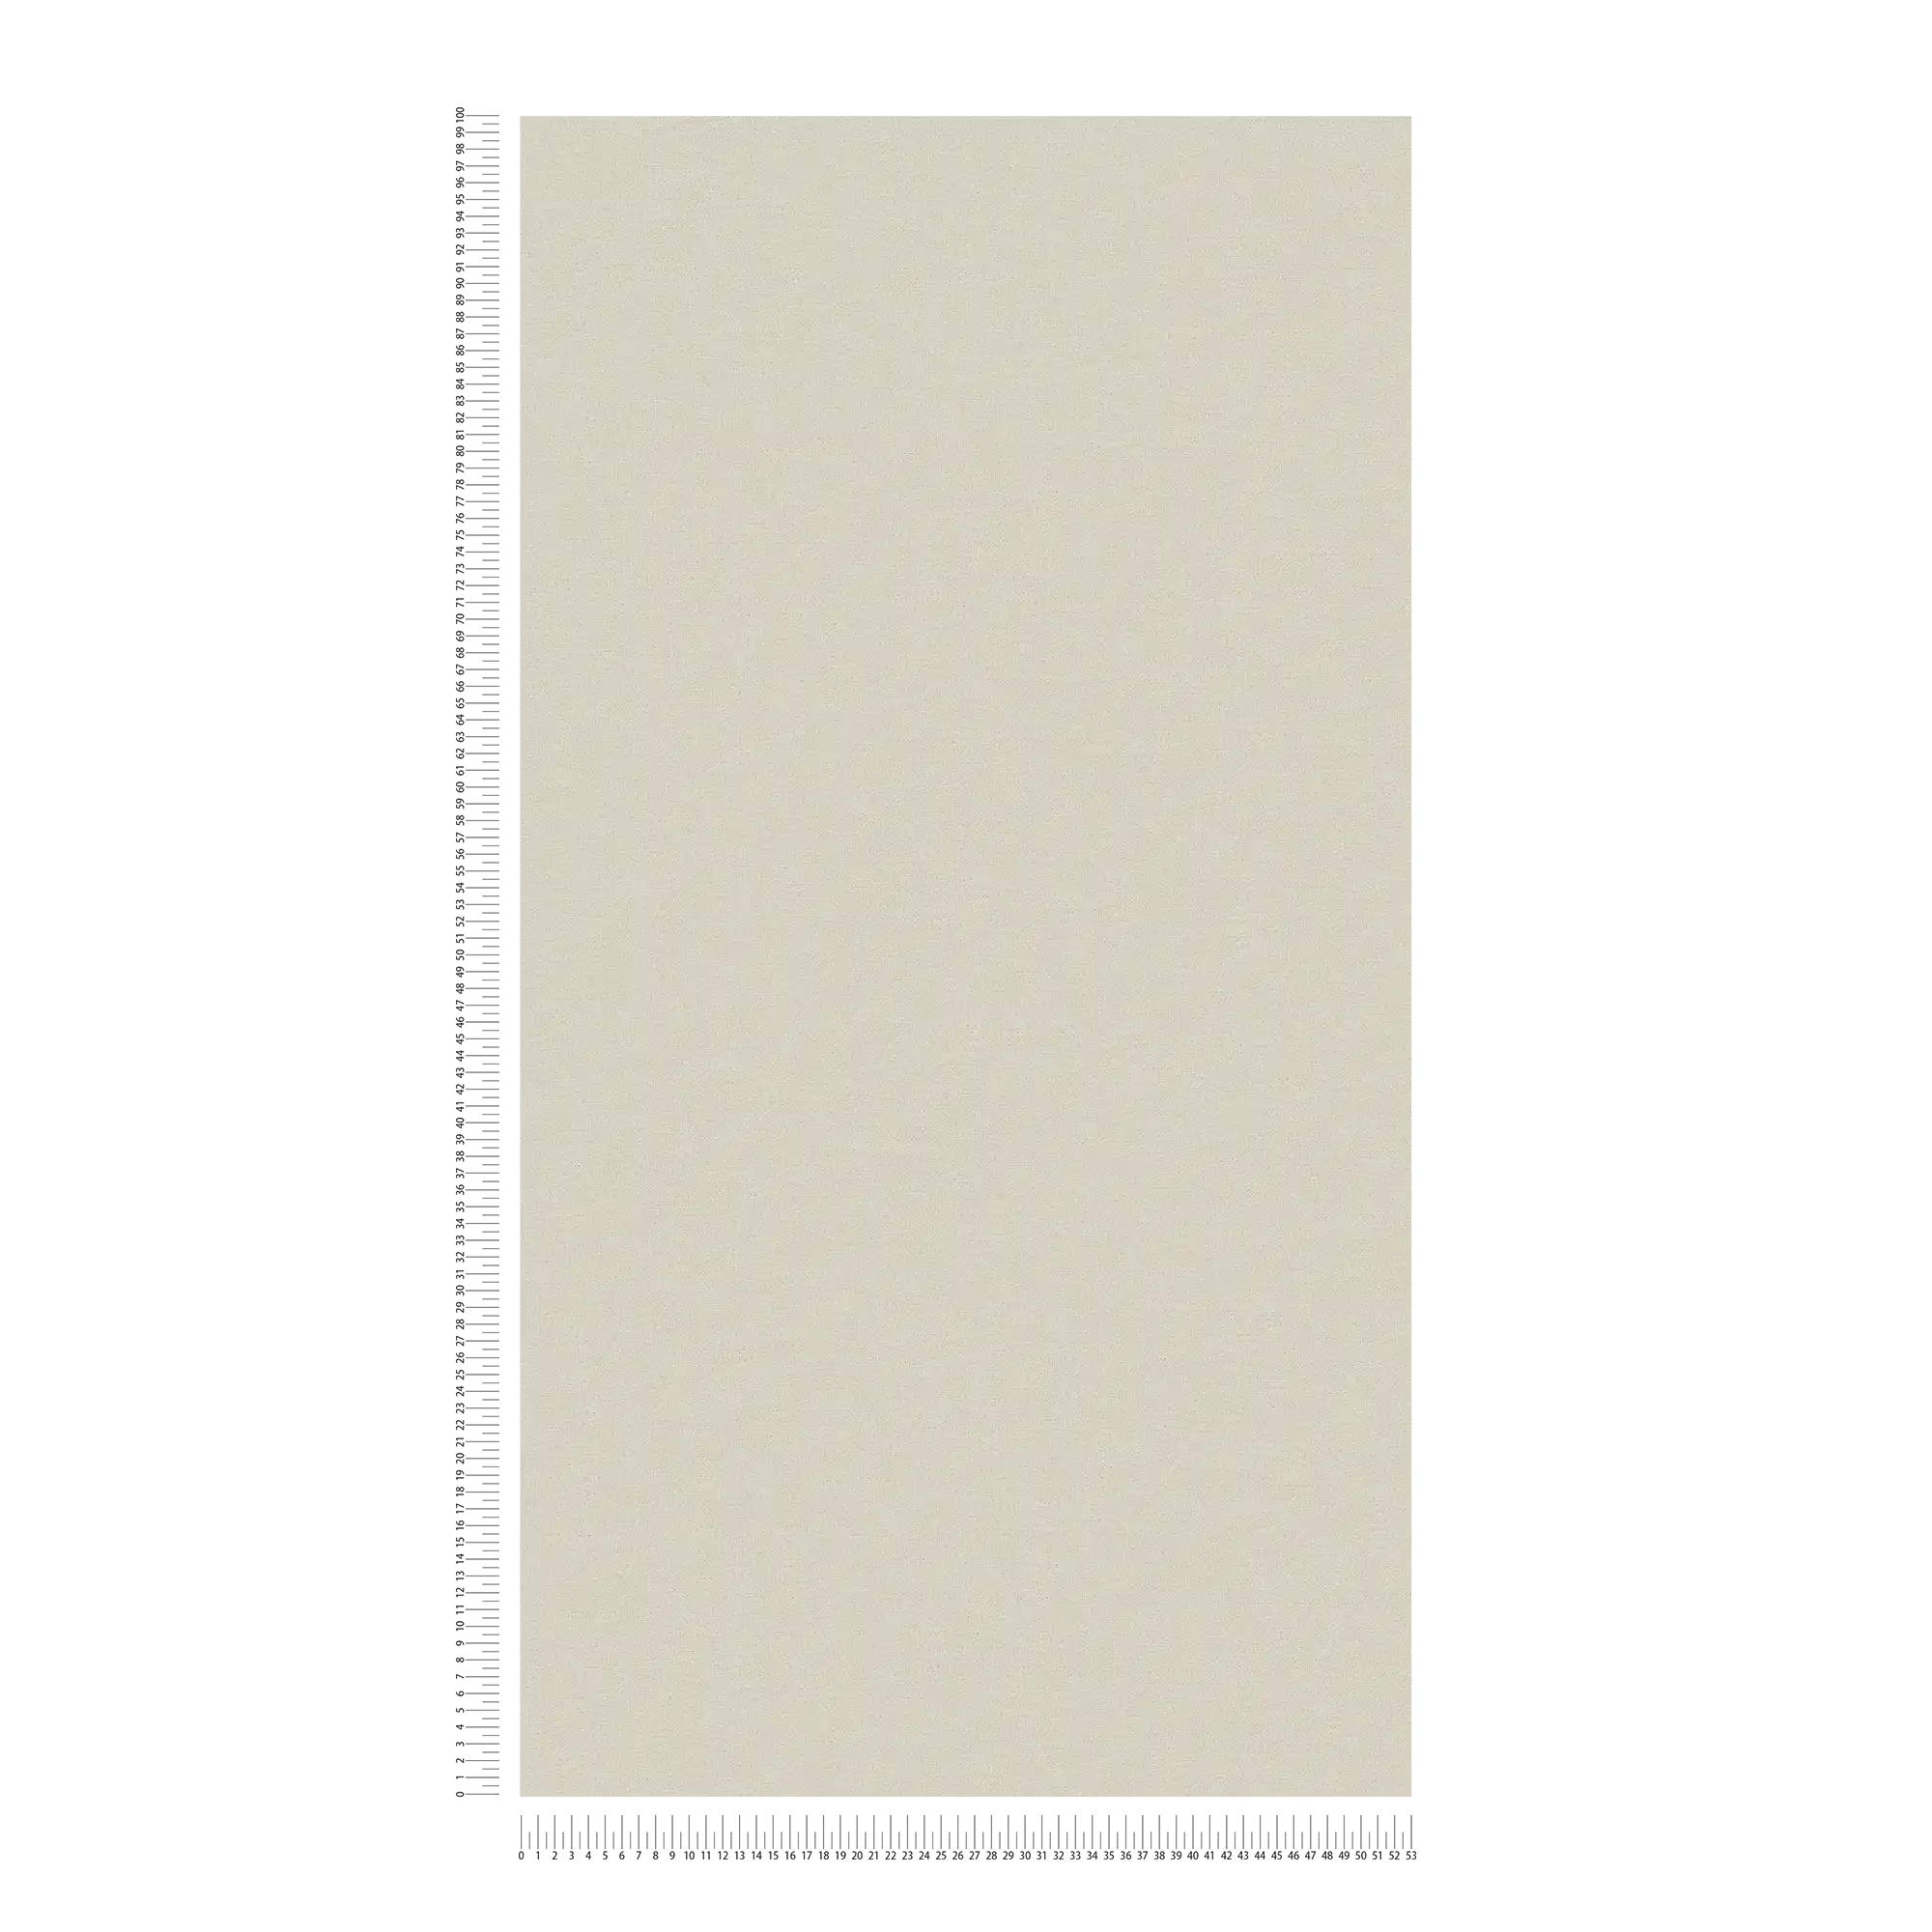             Non-woven wallpaper by MICHALSKY monochrome, matte in cream
        